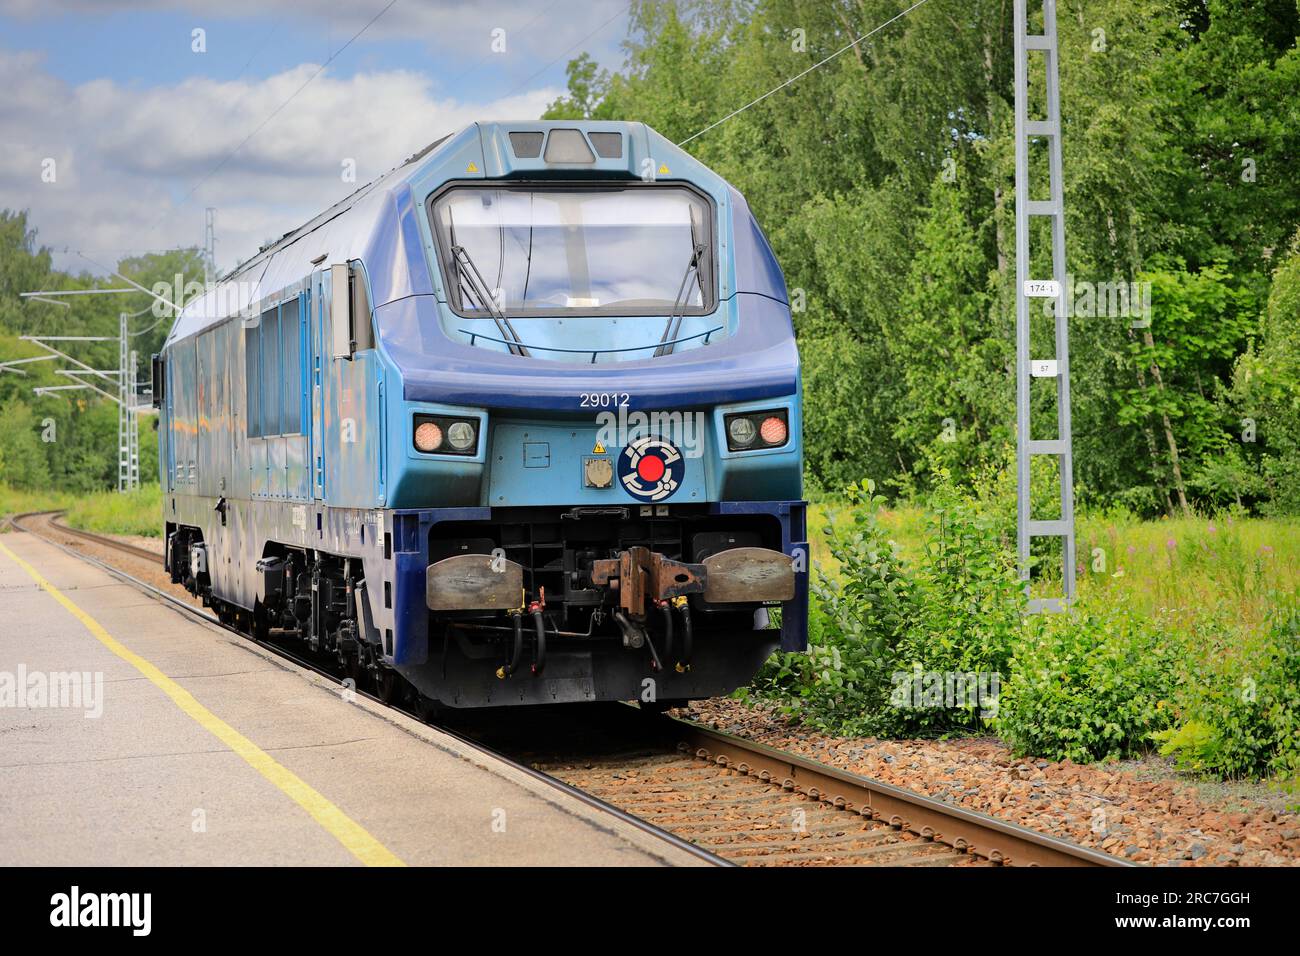 DR20 Nr. 29012 Tülomsaş baute die Diesellokomotive der Operail Finland, die jetzt im Besitz der North Rail Oy ist, passiert den Bahnhof Tammisaari. Finnland. 7. Juli 2023. Stockfoto